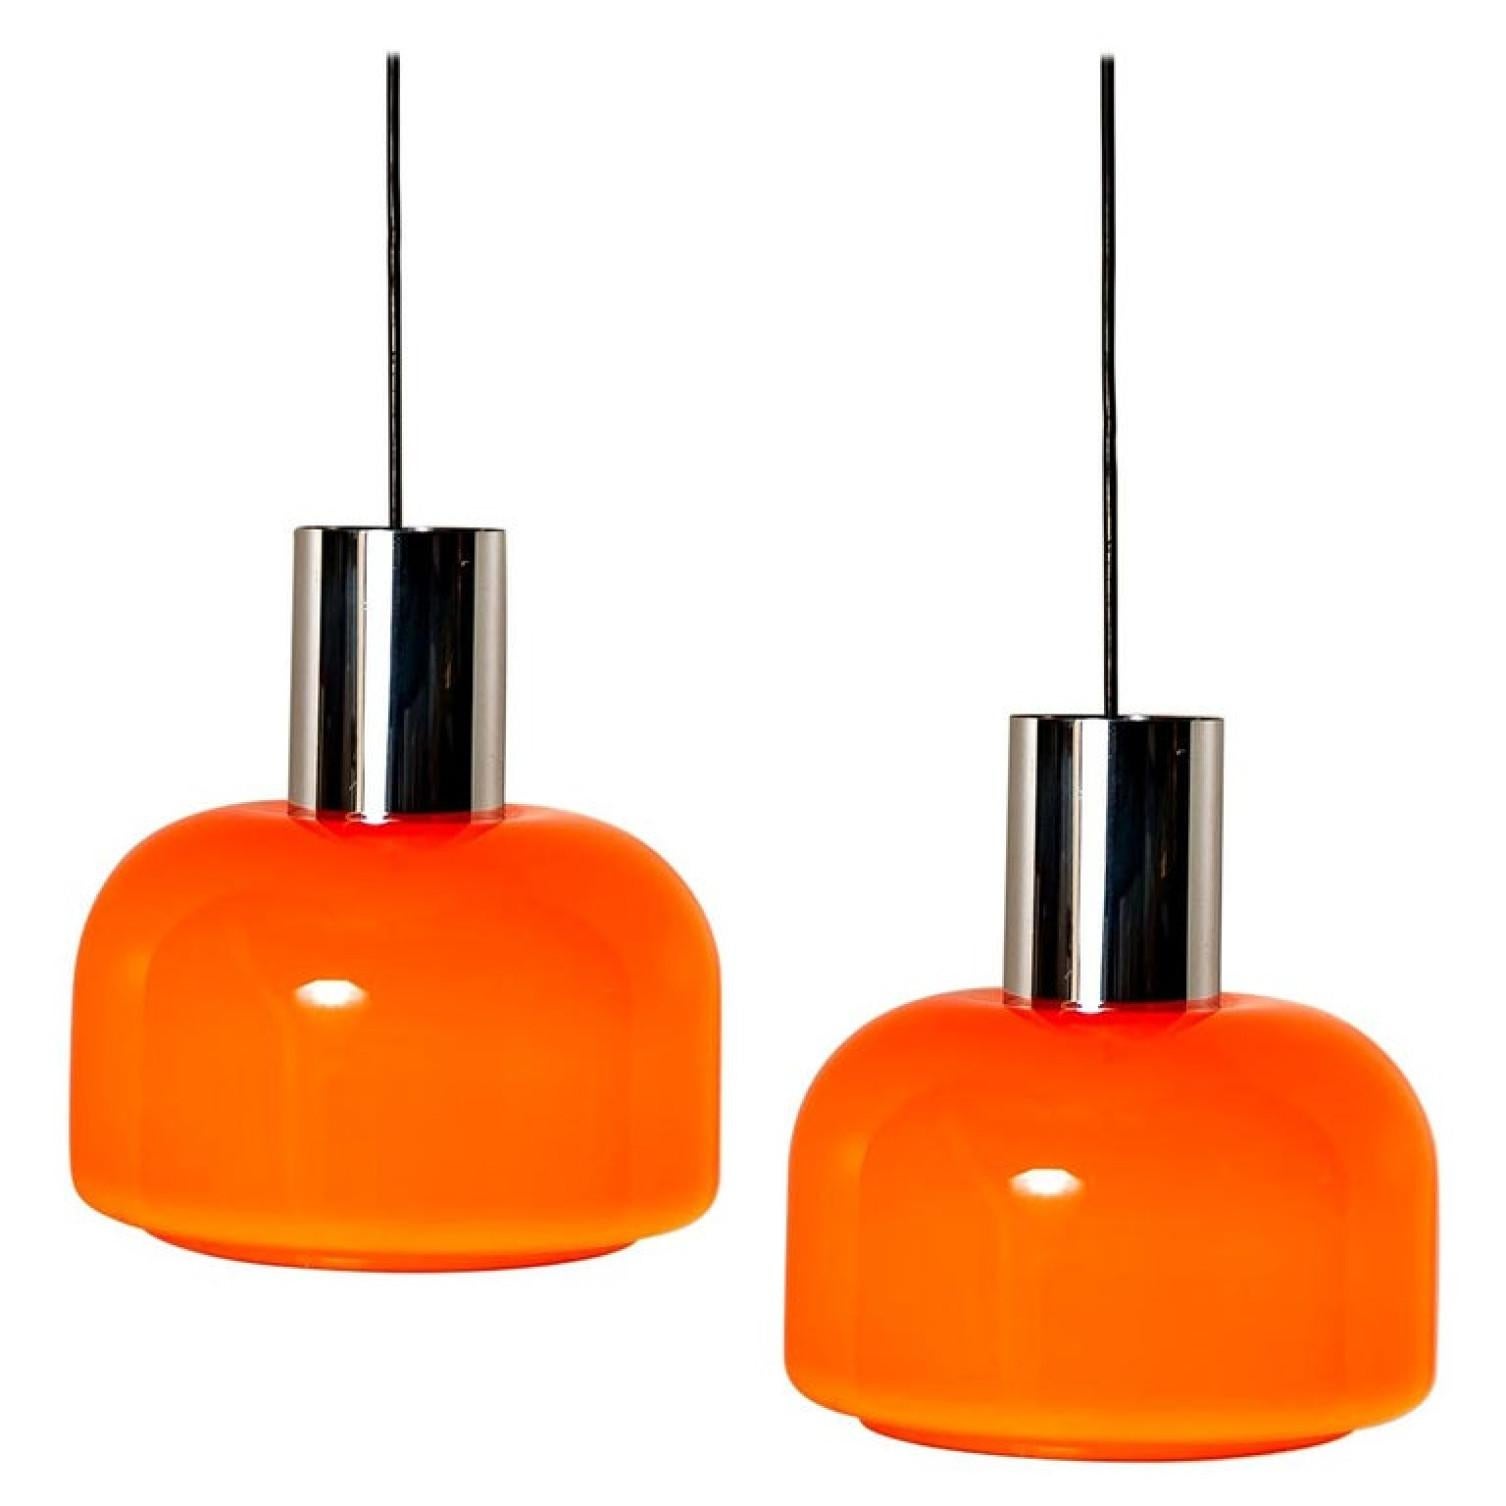 Orange hat etwas, das nach dieser besonderen Ära schreit. Und dieses Paar Peill & Putzler-Pendelleuchten aus den 1970er Jahren ist sehr orange!
Mit Chromdetails, schwarzer Kordel und Baldachin.

Der formschöne, mundgeblasene Lampenschirm besteht aus